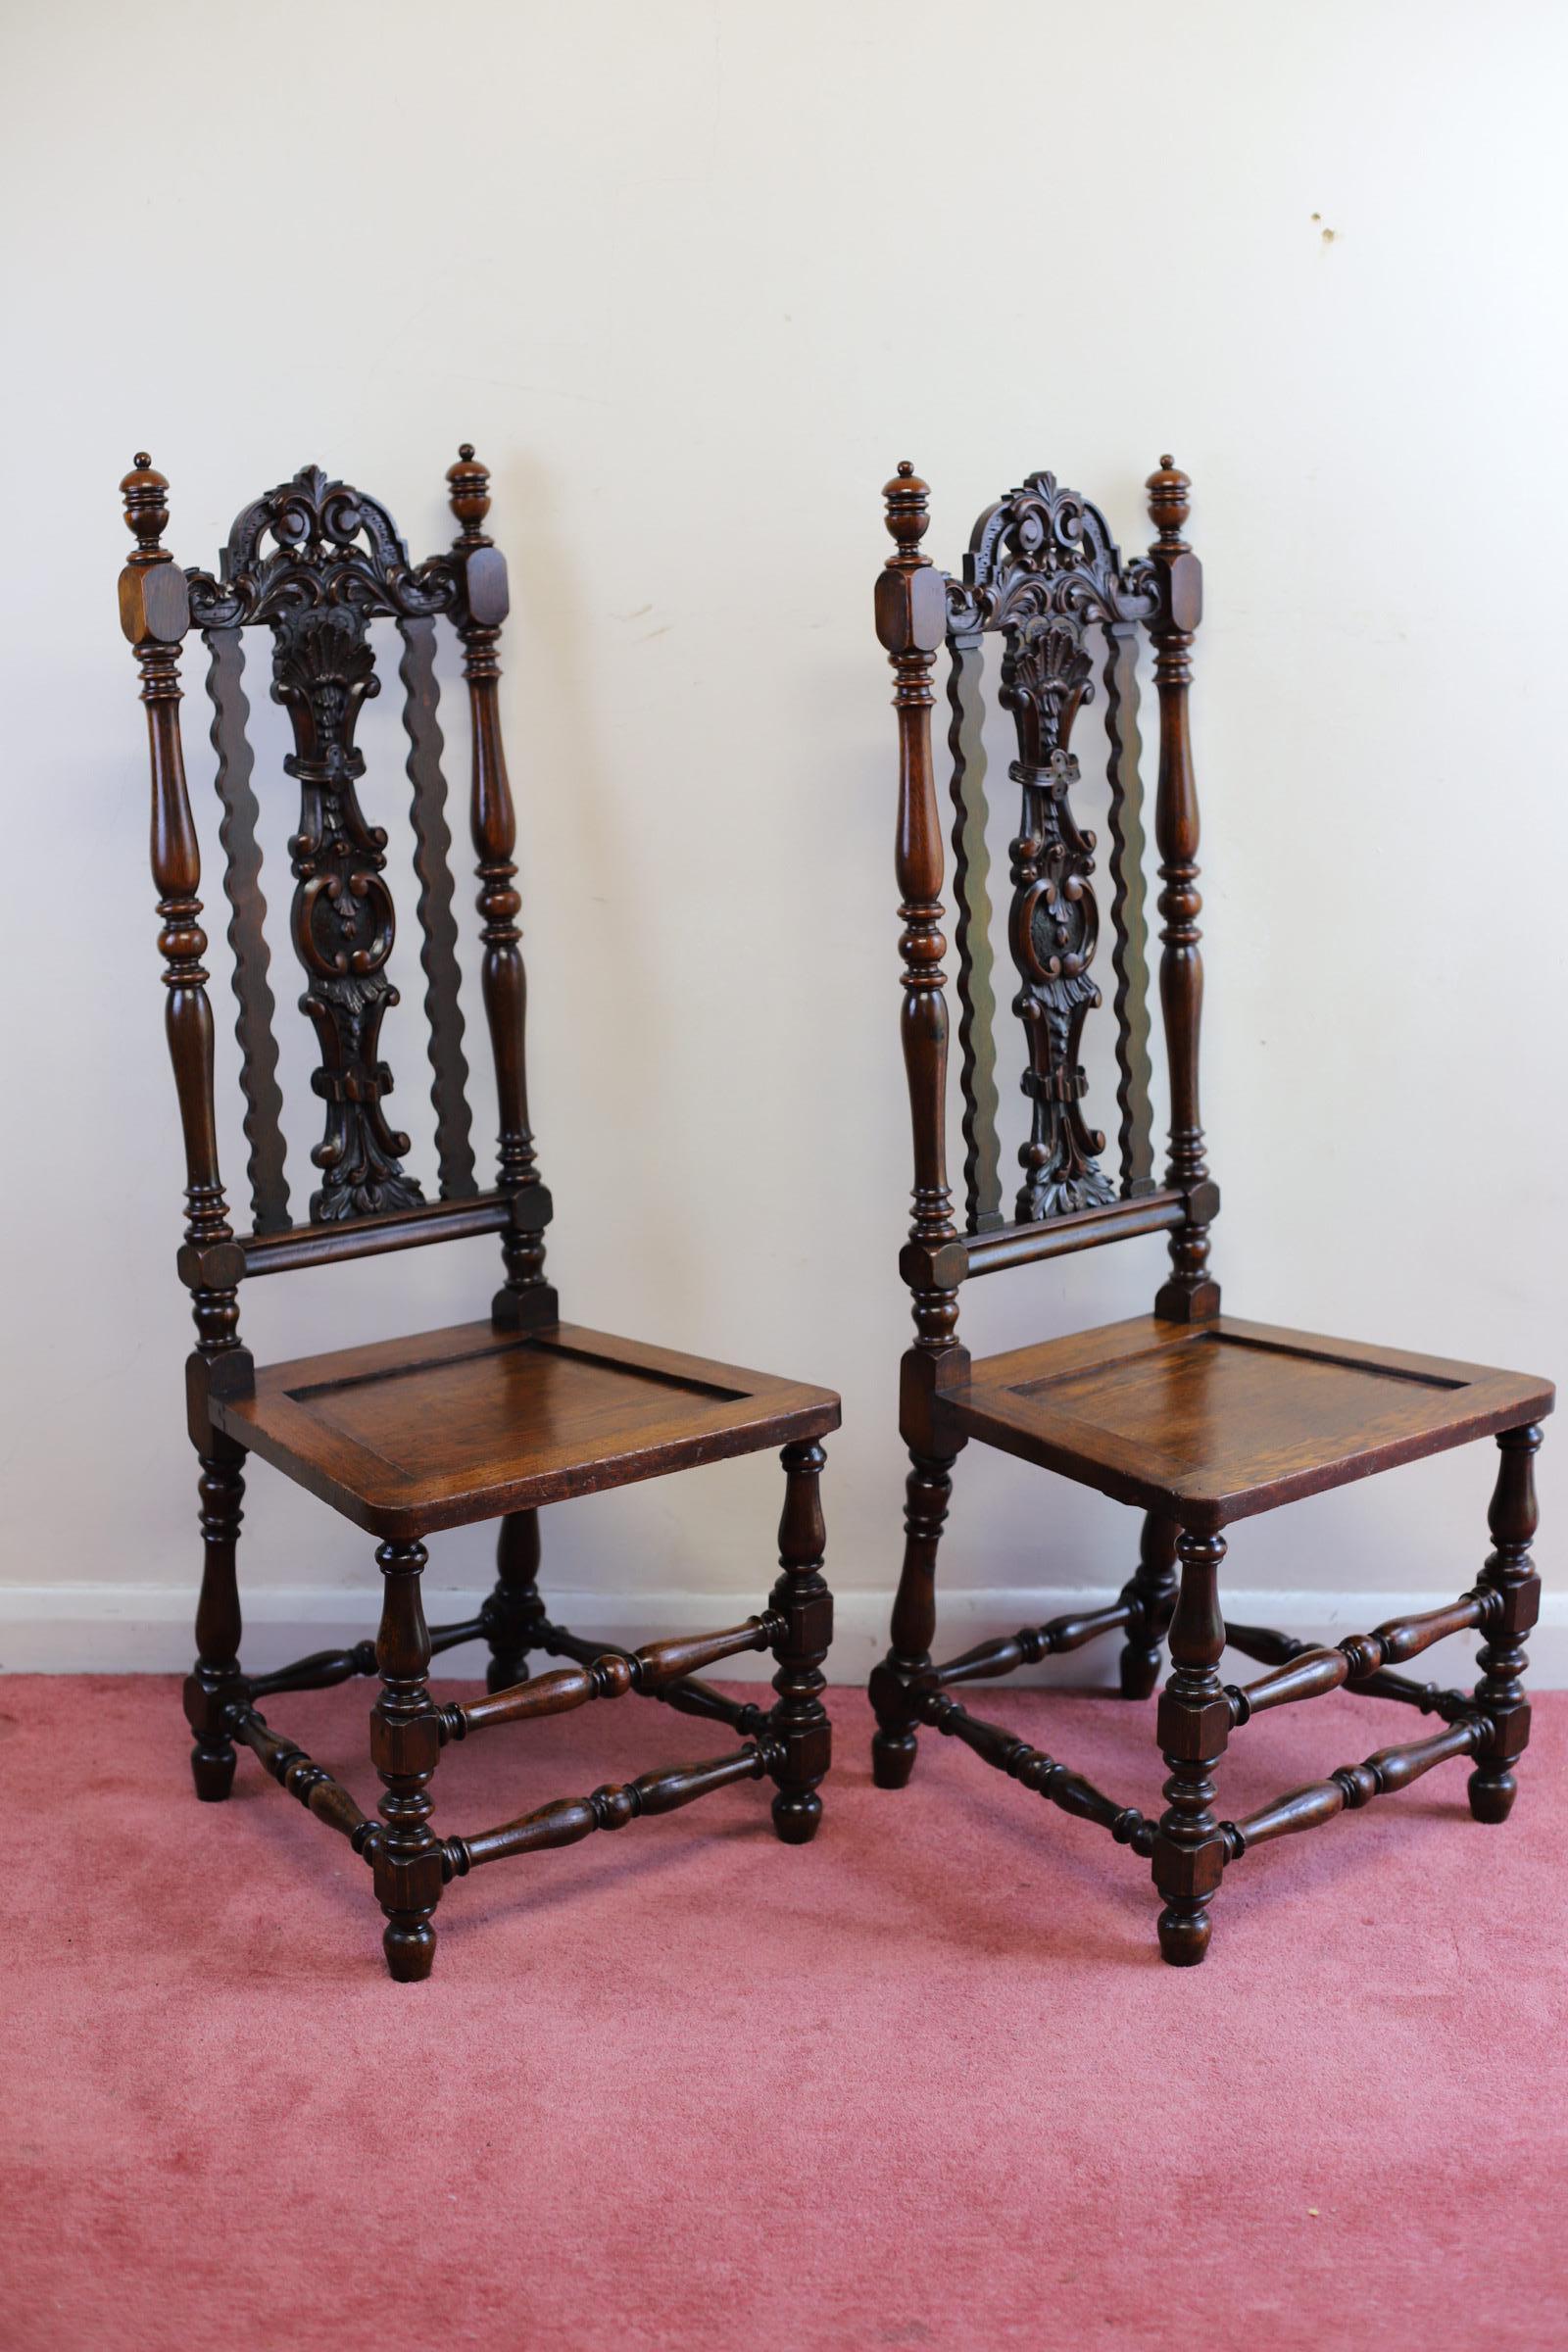 Ajoutez une touche de classe à votre intérieur avec cette superbe paire de chaises de hall antiques Carolean. Fabriquées en chêne, elles arborent une couleur brune chaude qui s'intègre parfaitement à tout type de décor. Les chaises sont vendues par